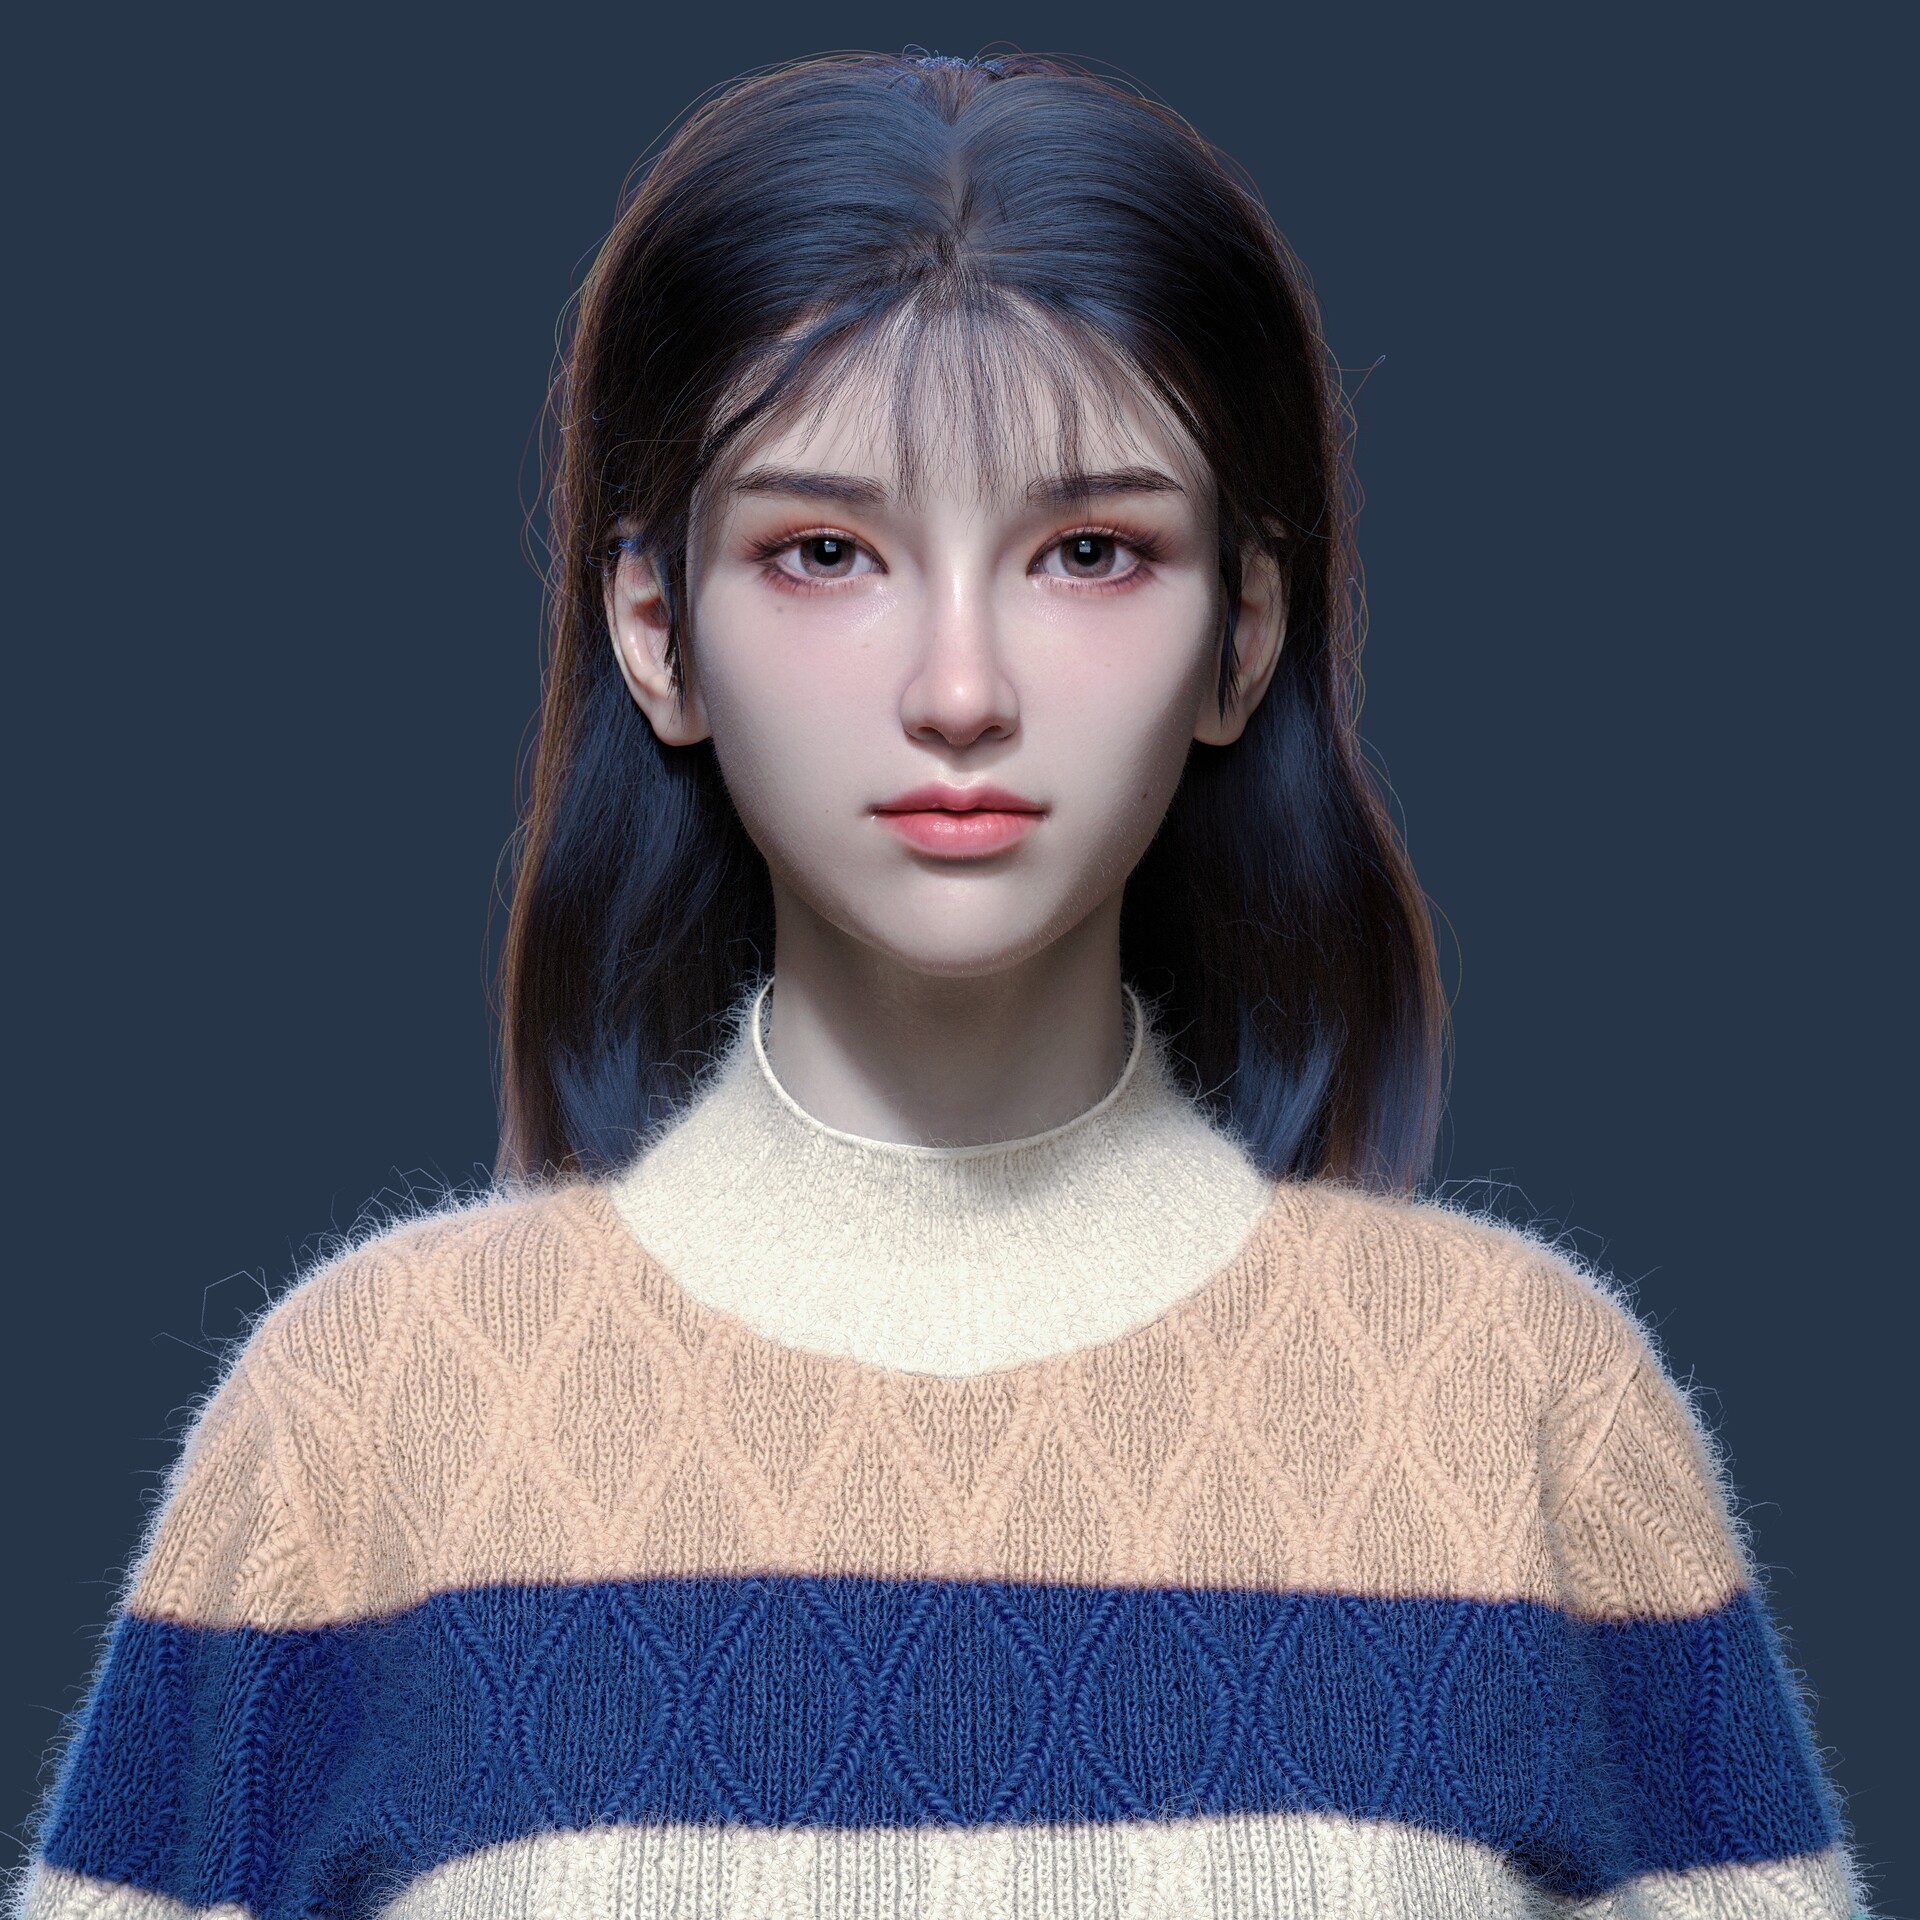 ArtStation - sweater girl